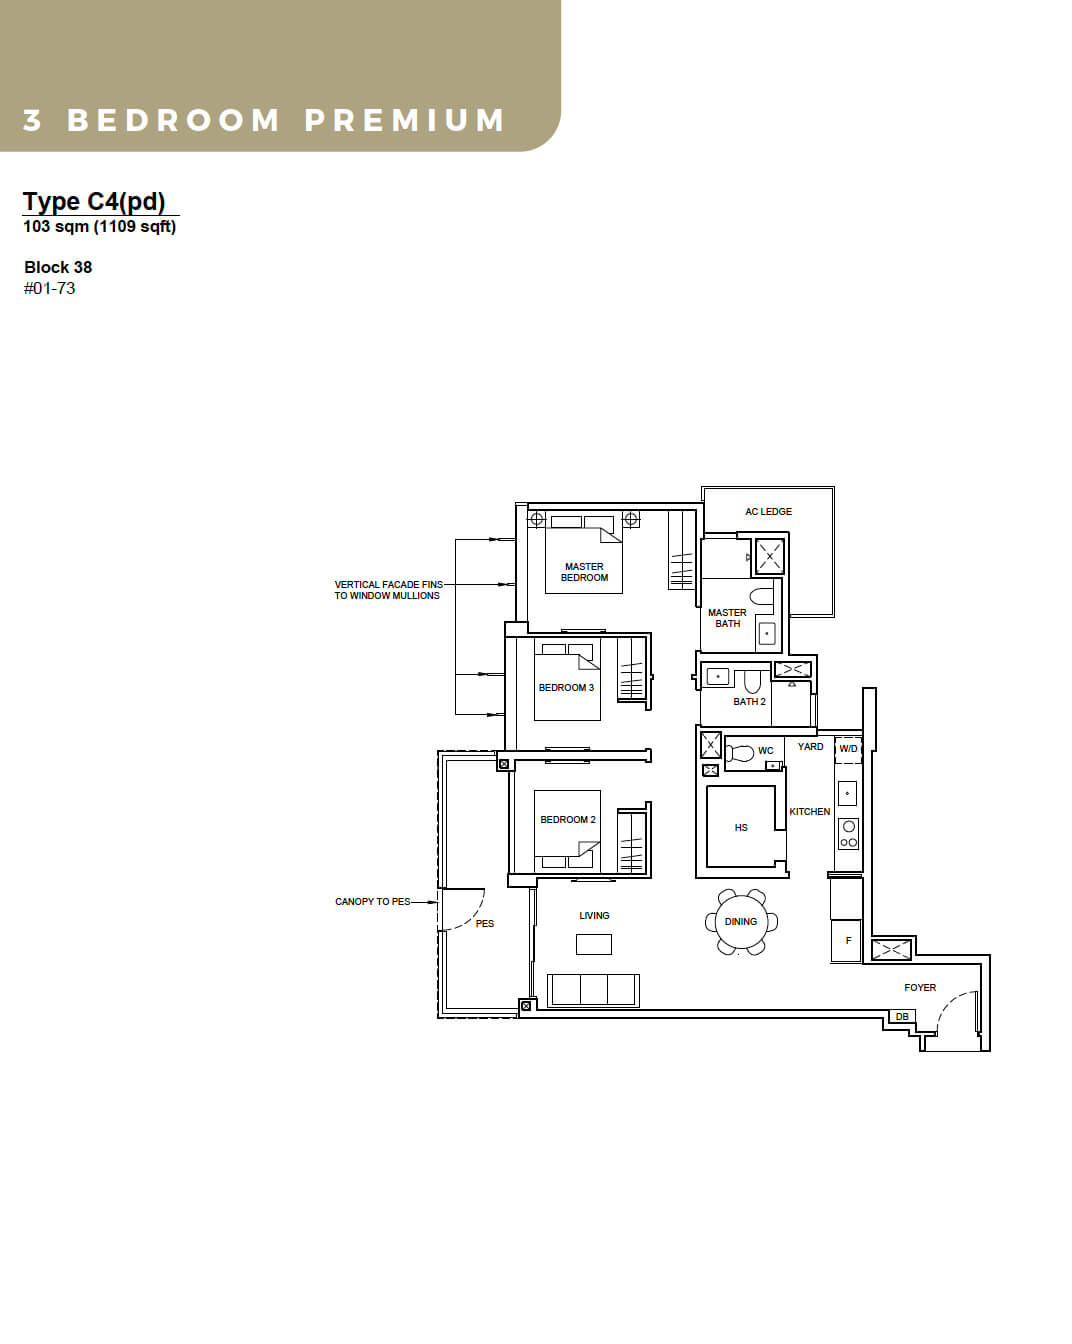 Forett at Bukit Timah Floor Plan 3-Bedroom Premium Type C4 pd